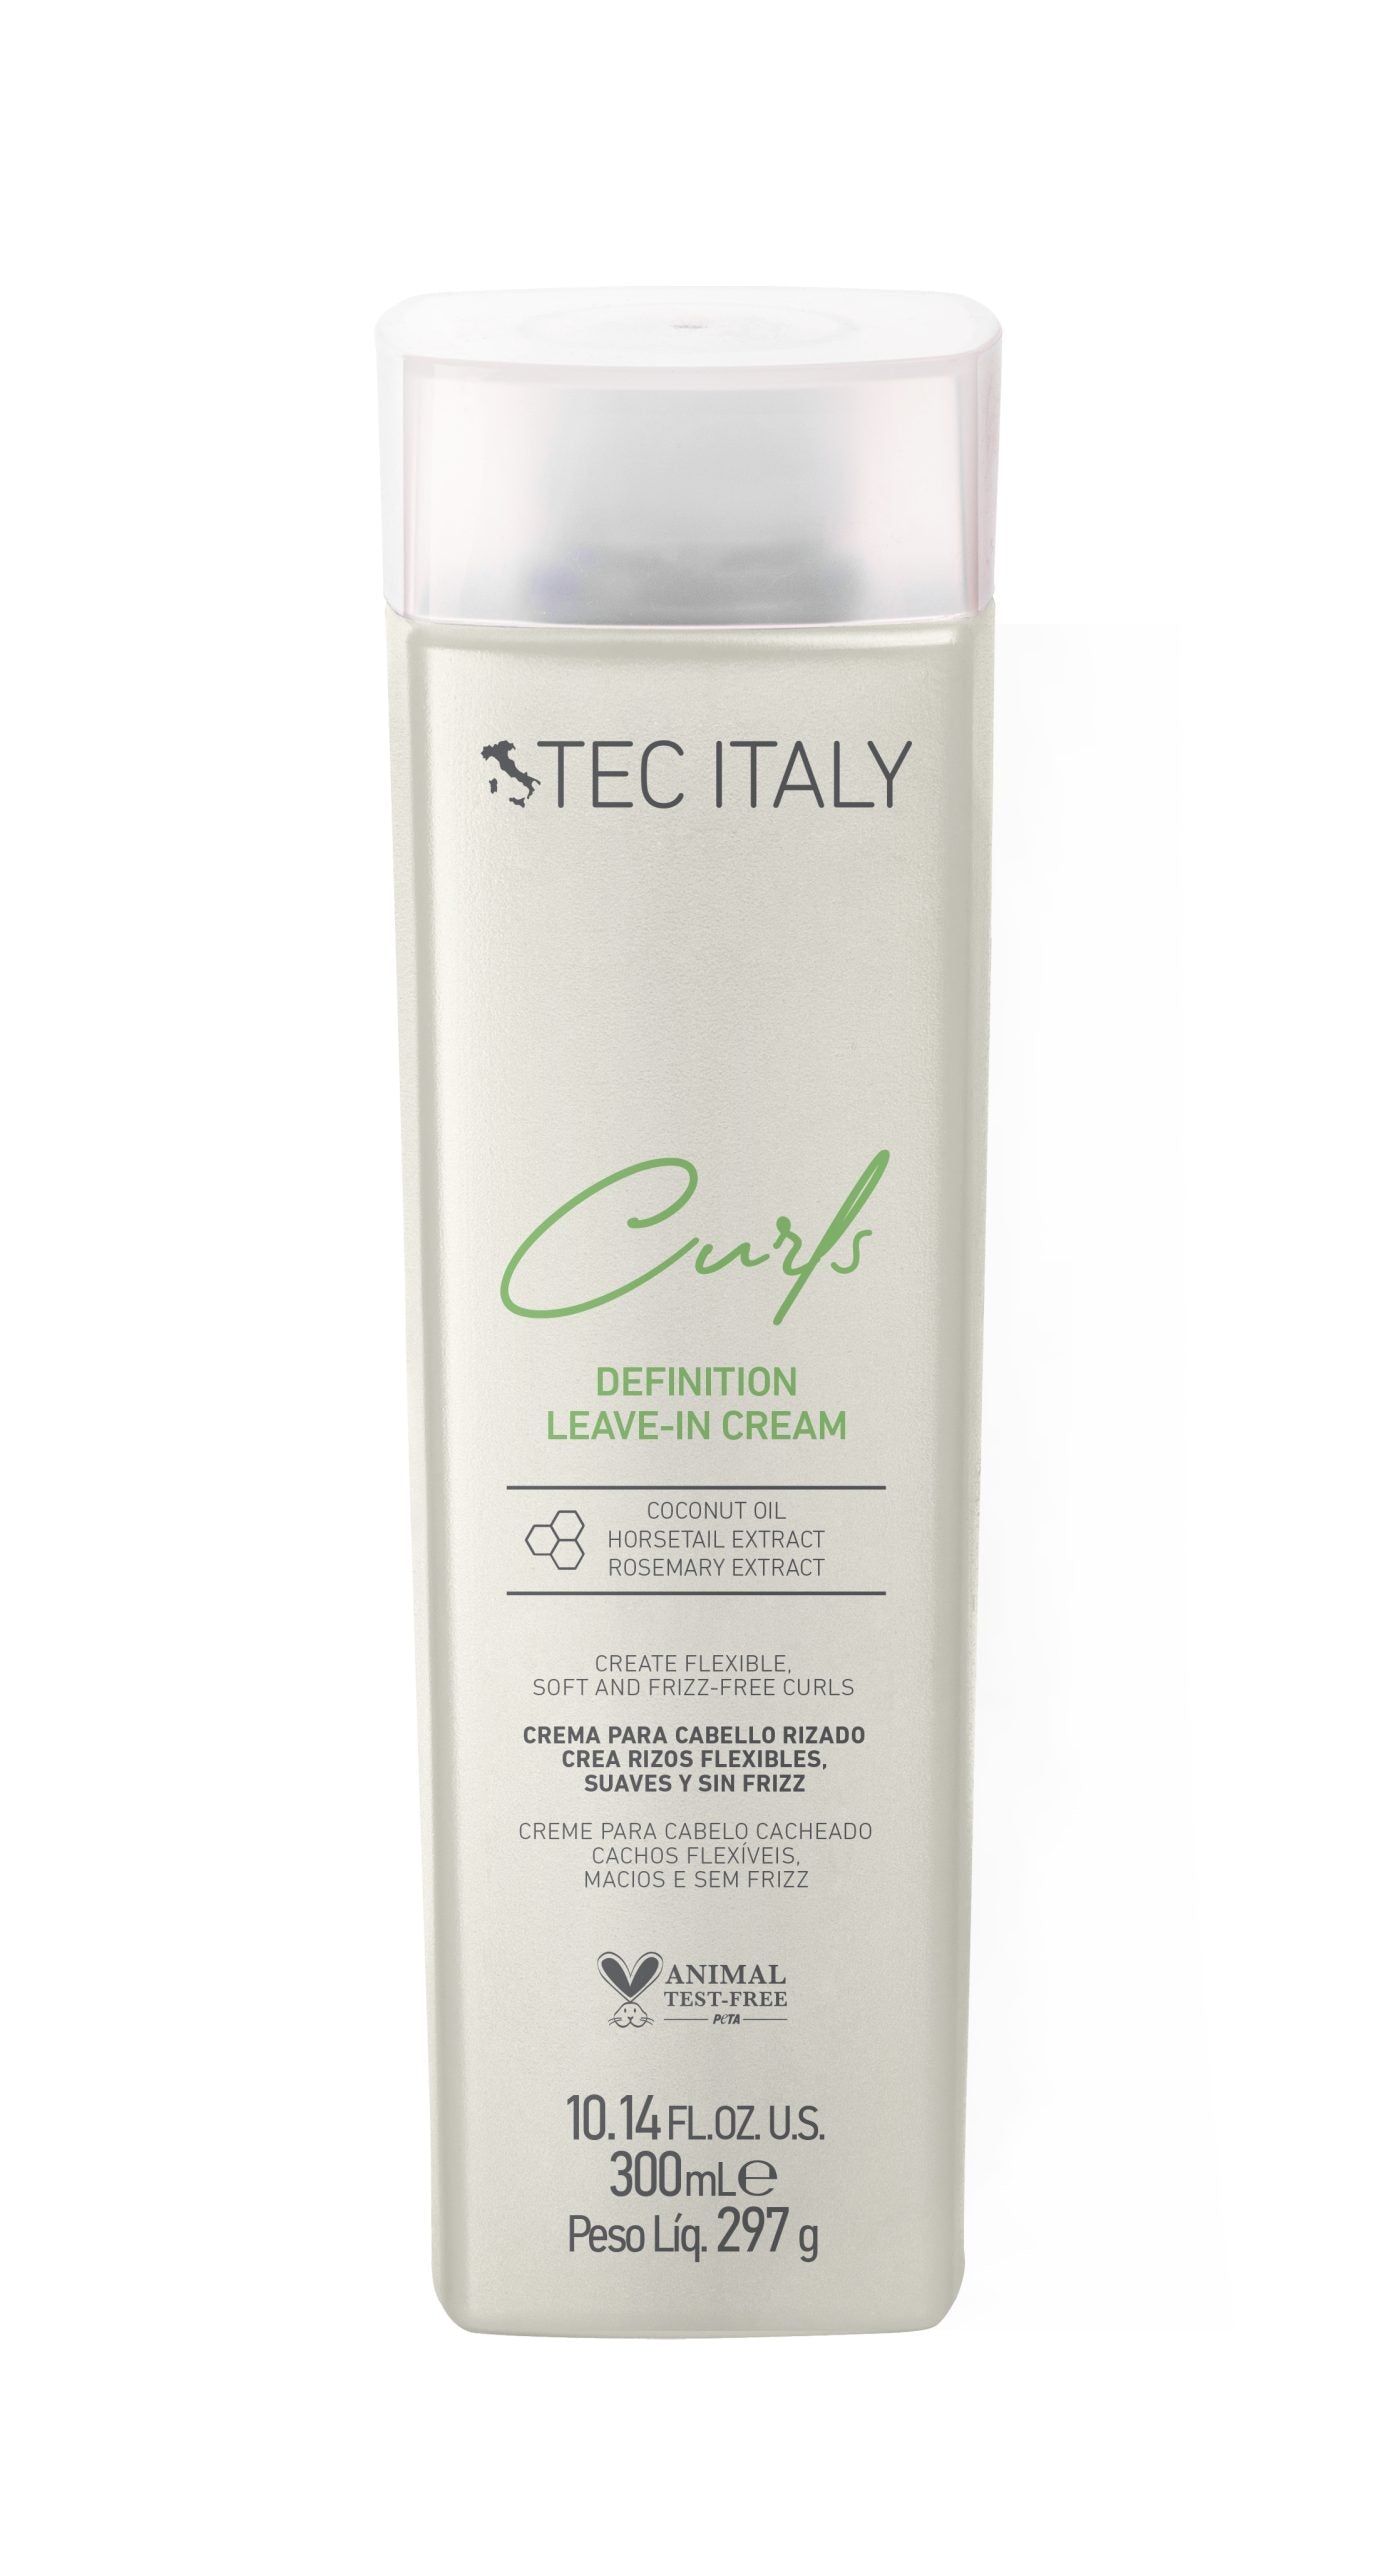 Tec Italy Curls Definition Leave-in Cream - Crema para crear rizos flexibles, suaves y sin frizz